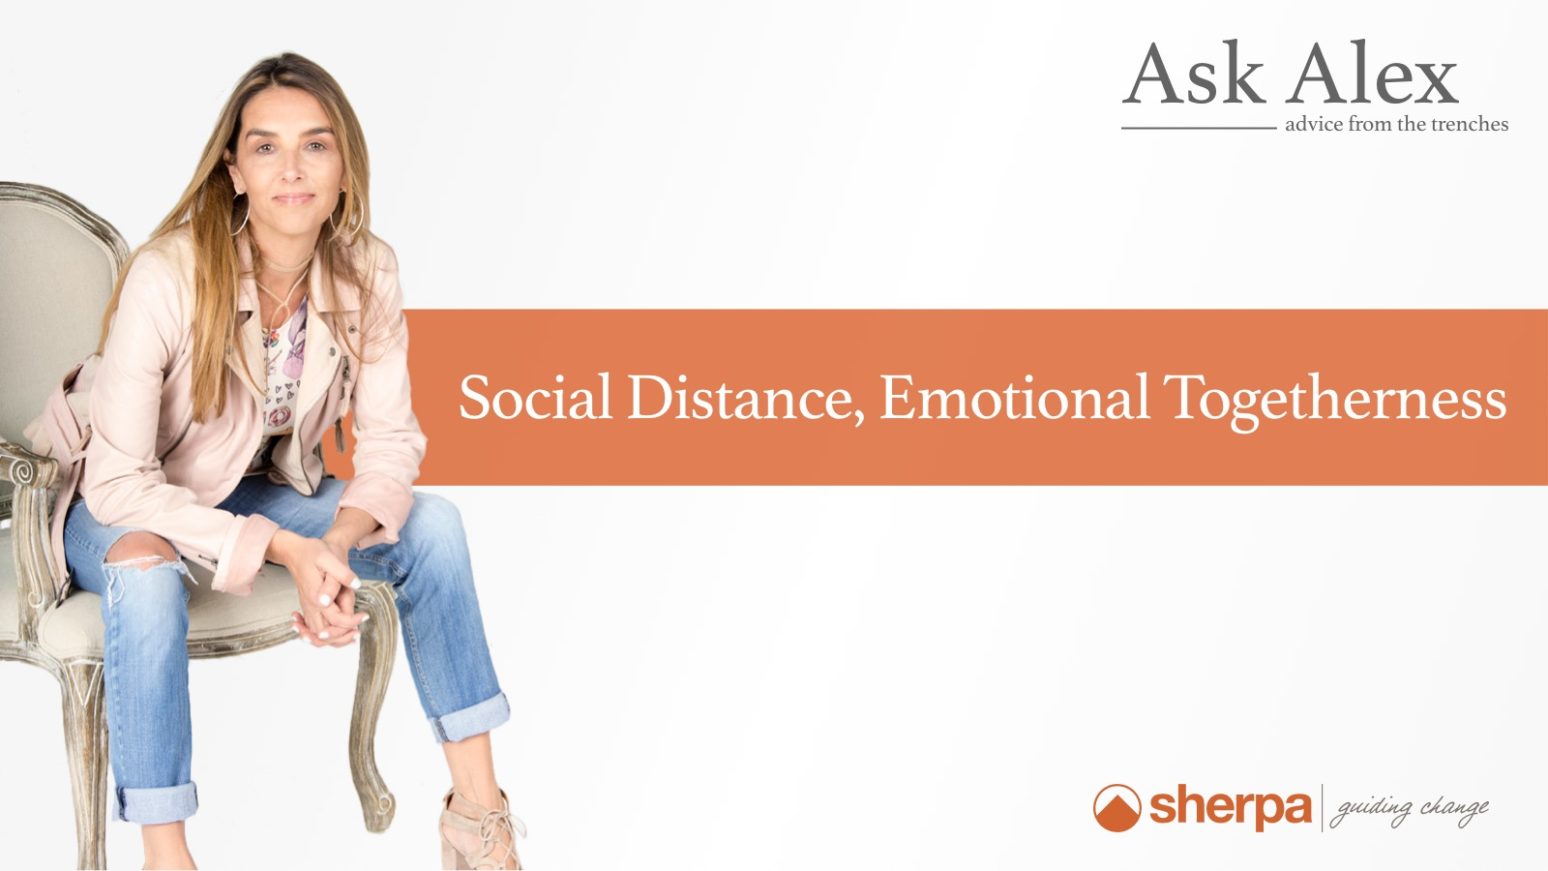 Ask Alex: Social Distance, Emotional Togetherness